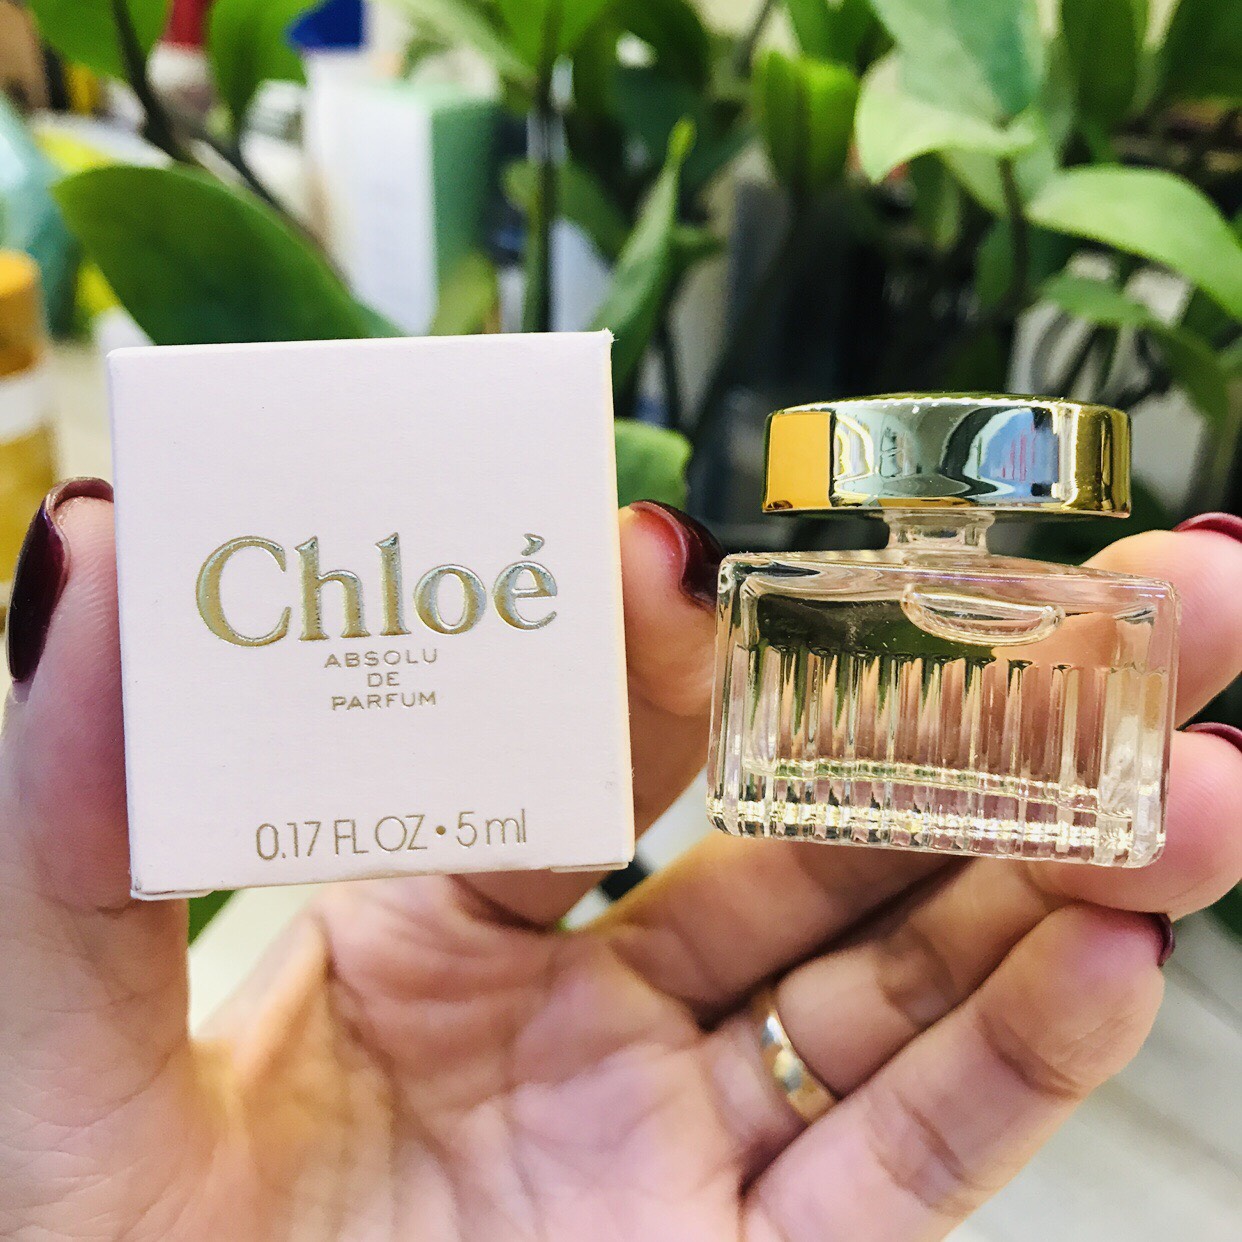 Chloé Absolu De Parfume 5ml (ฝาสีทอง)